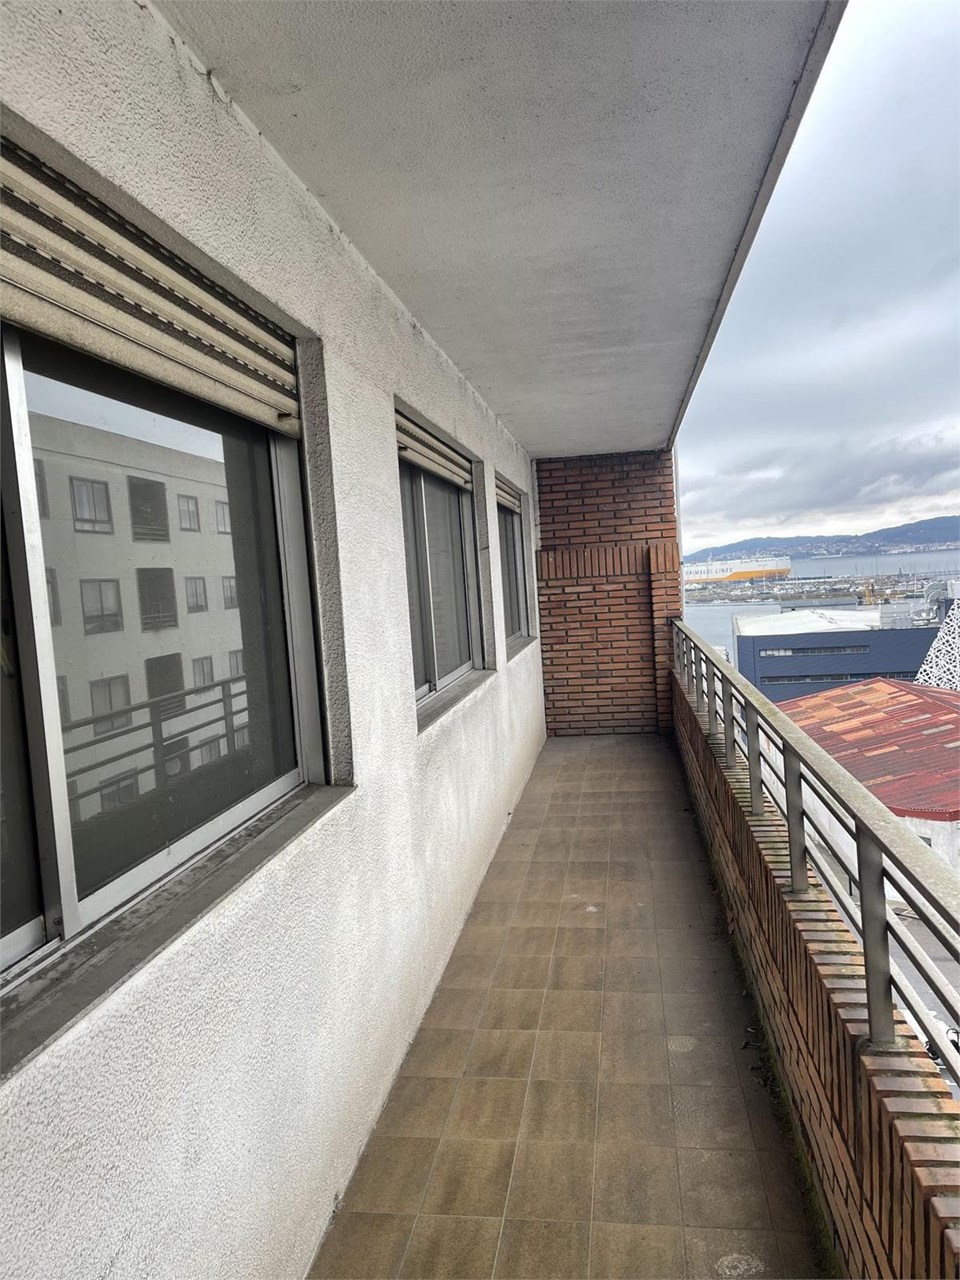 Foto 2 Severo Ochoa, 4 dormitorios, balcón, 2 plazas de garaje. Vistas al mar.